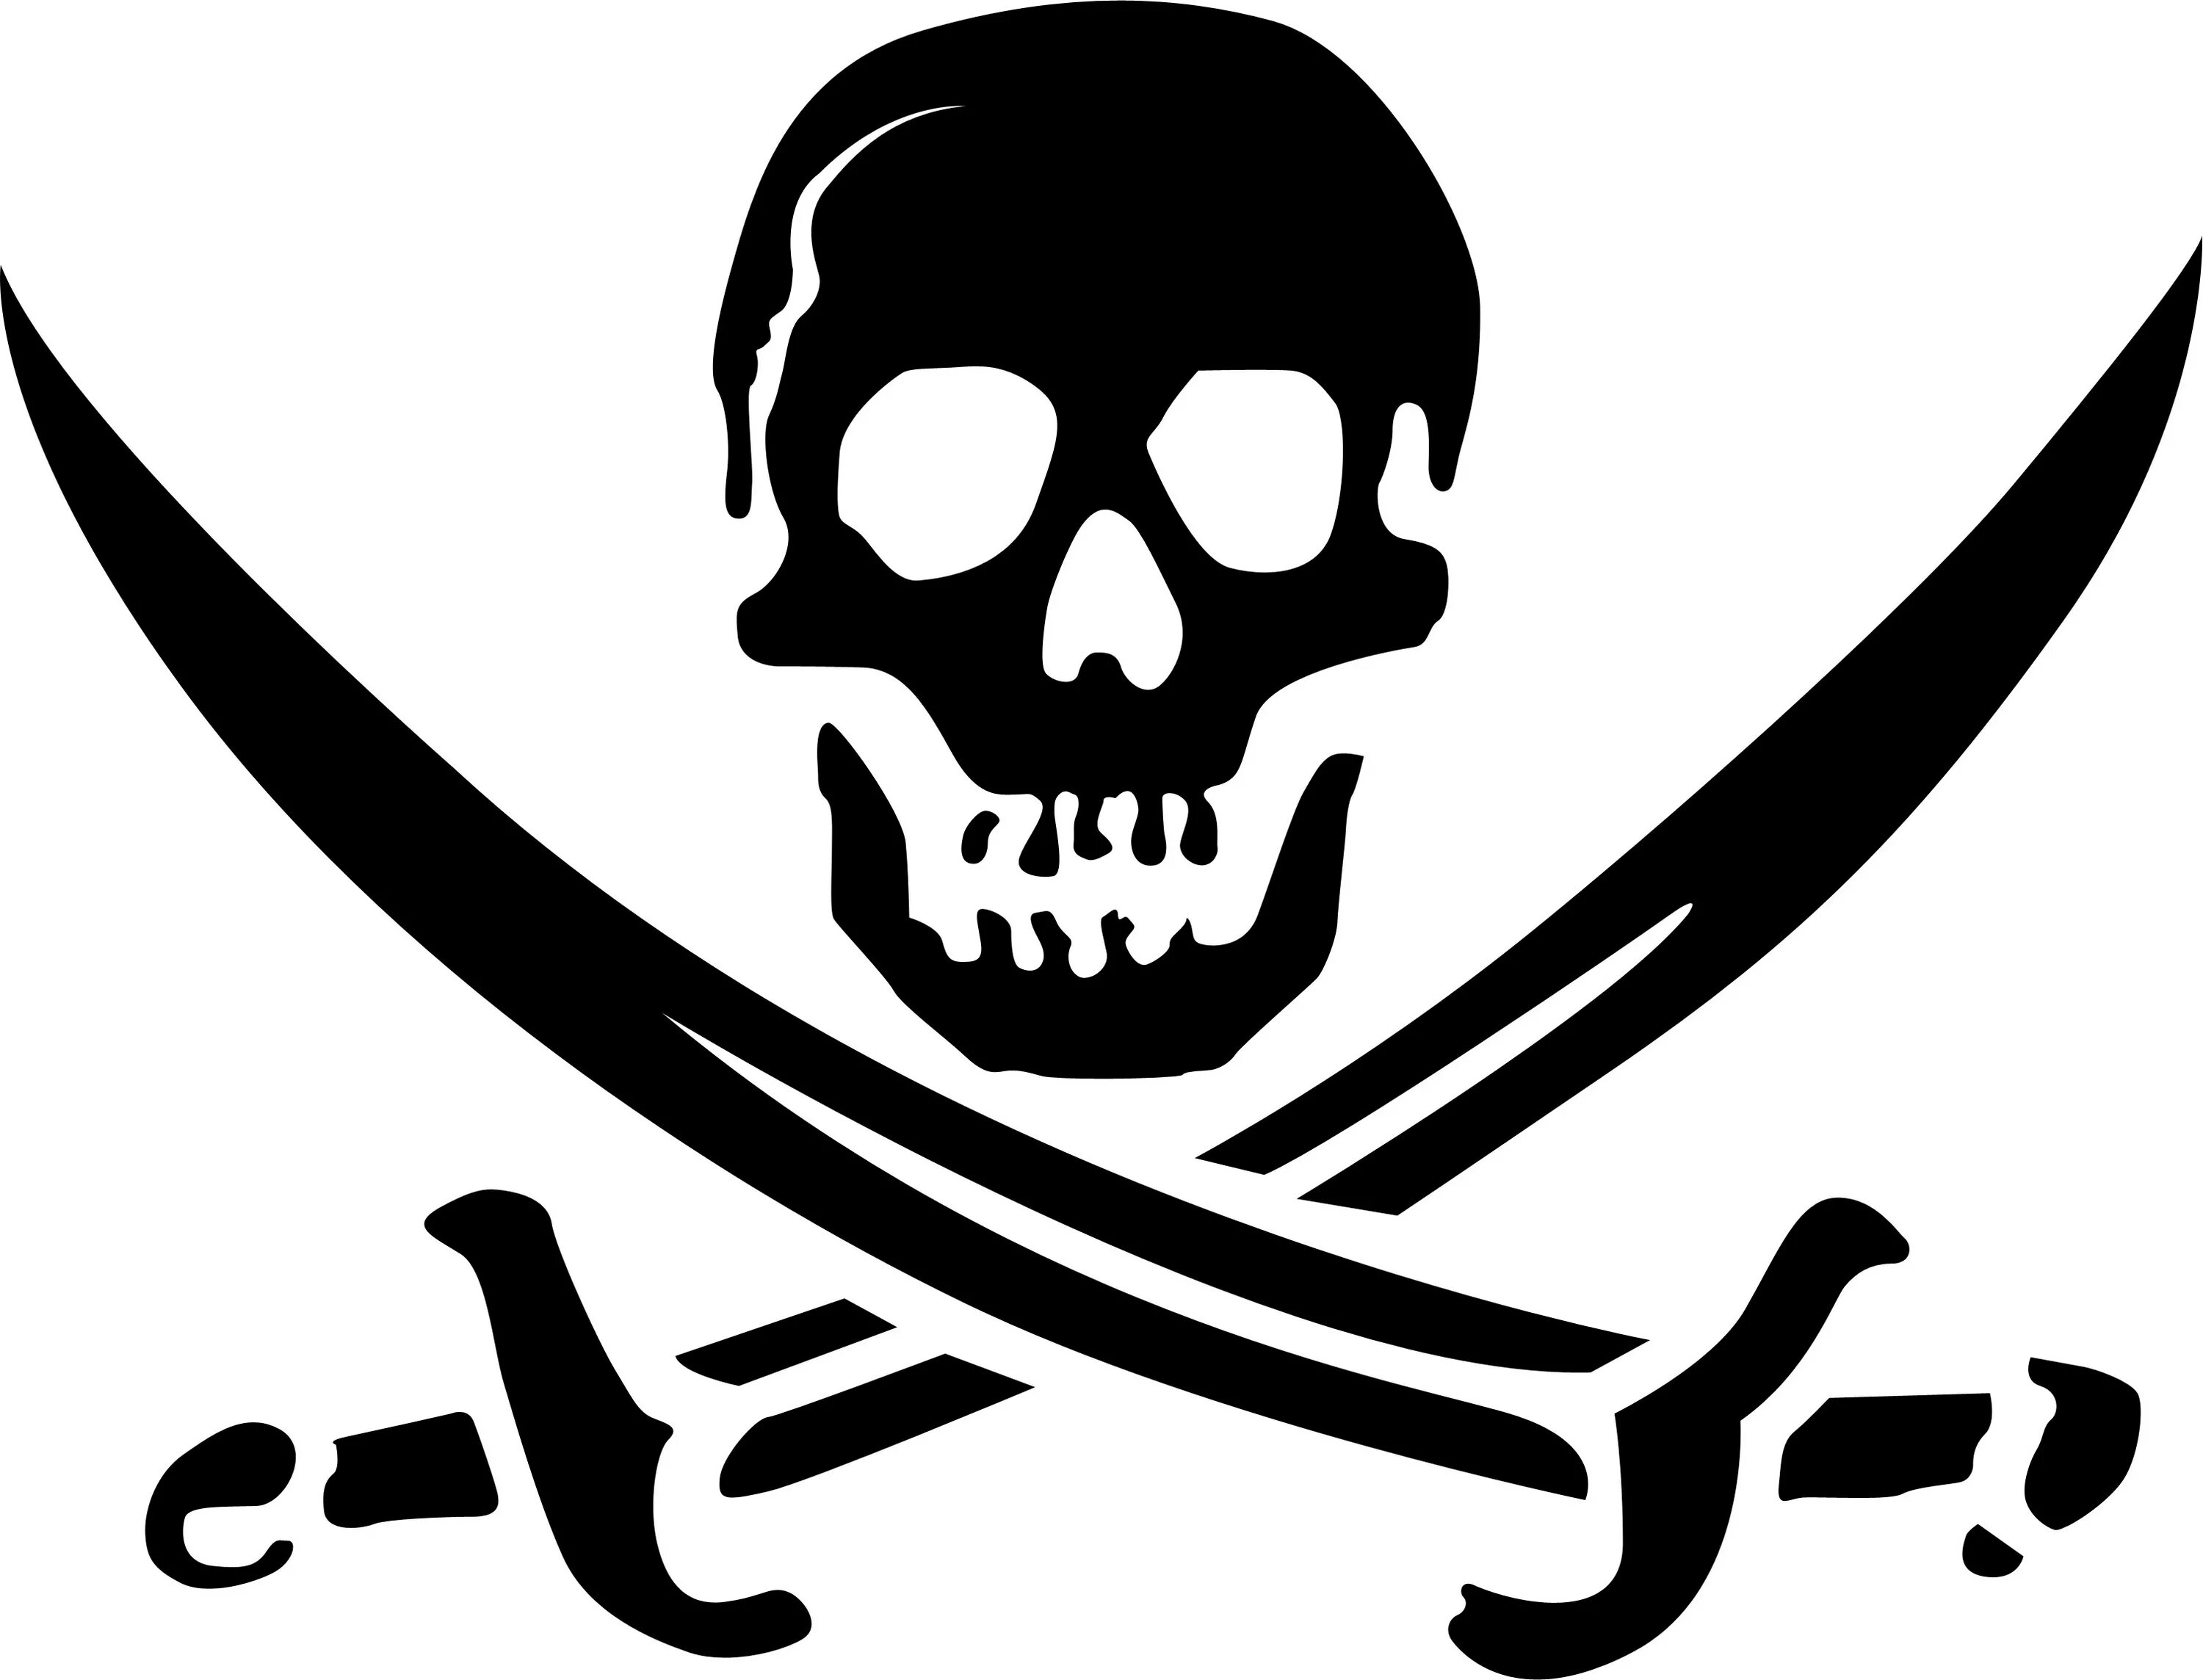 Пиратская ж. Пиратский череп. Пиратский знак. Символ пиратов. Пиратские наклейки на авто.